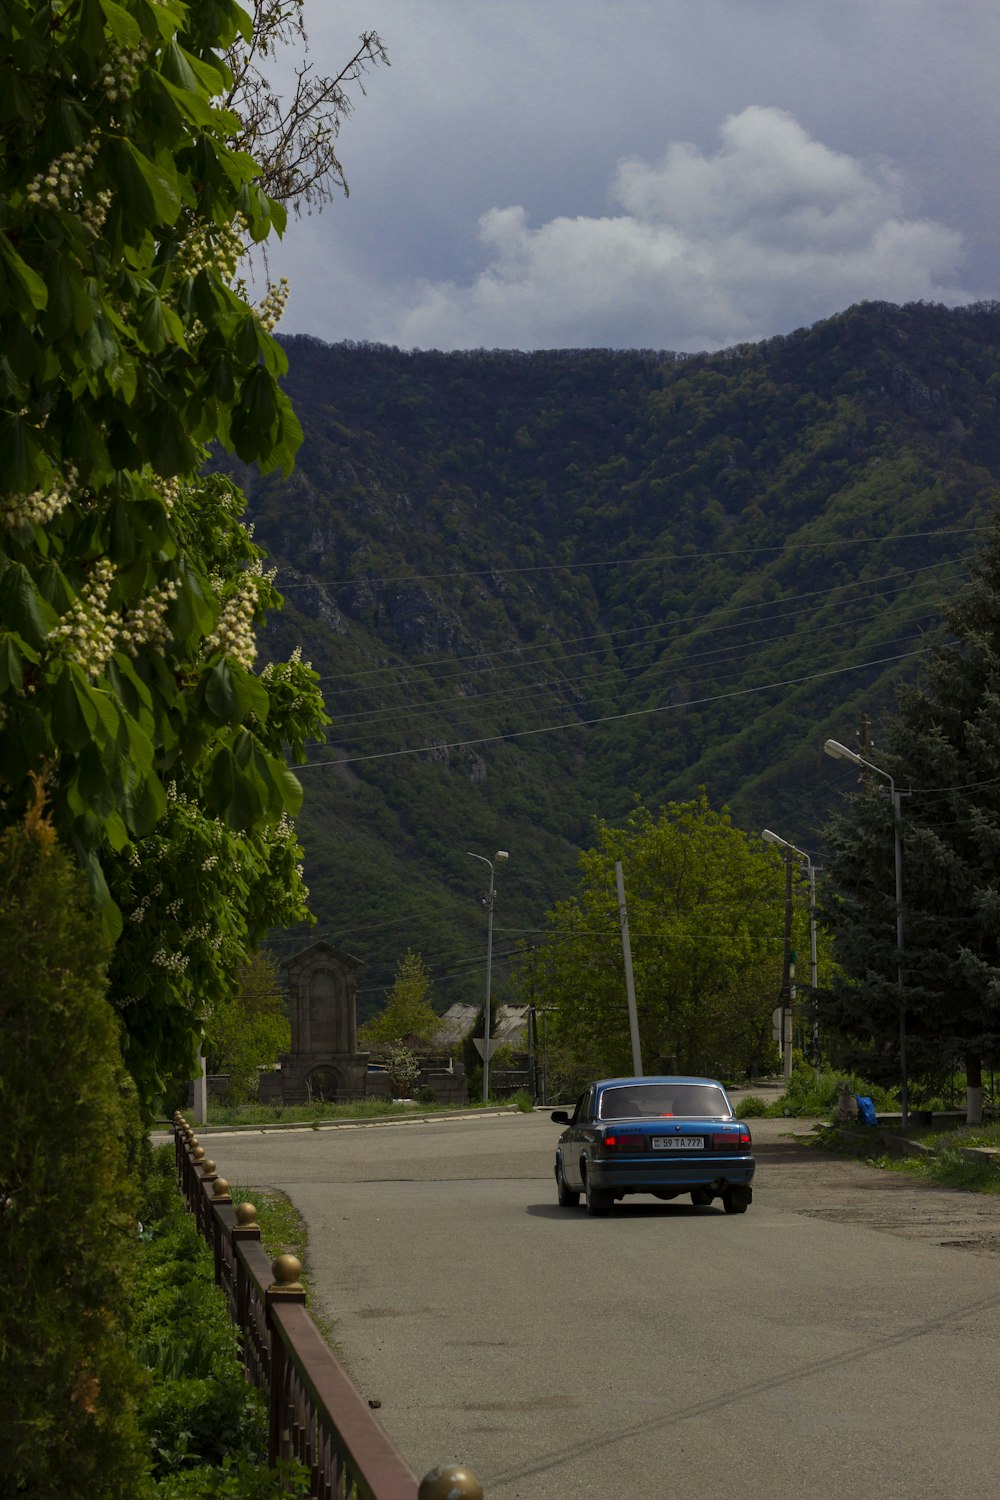 a car driving down a street next to a lush green hillside